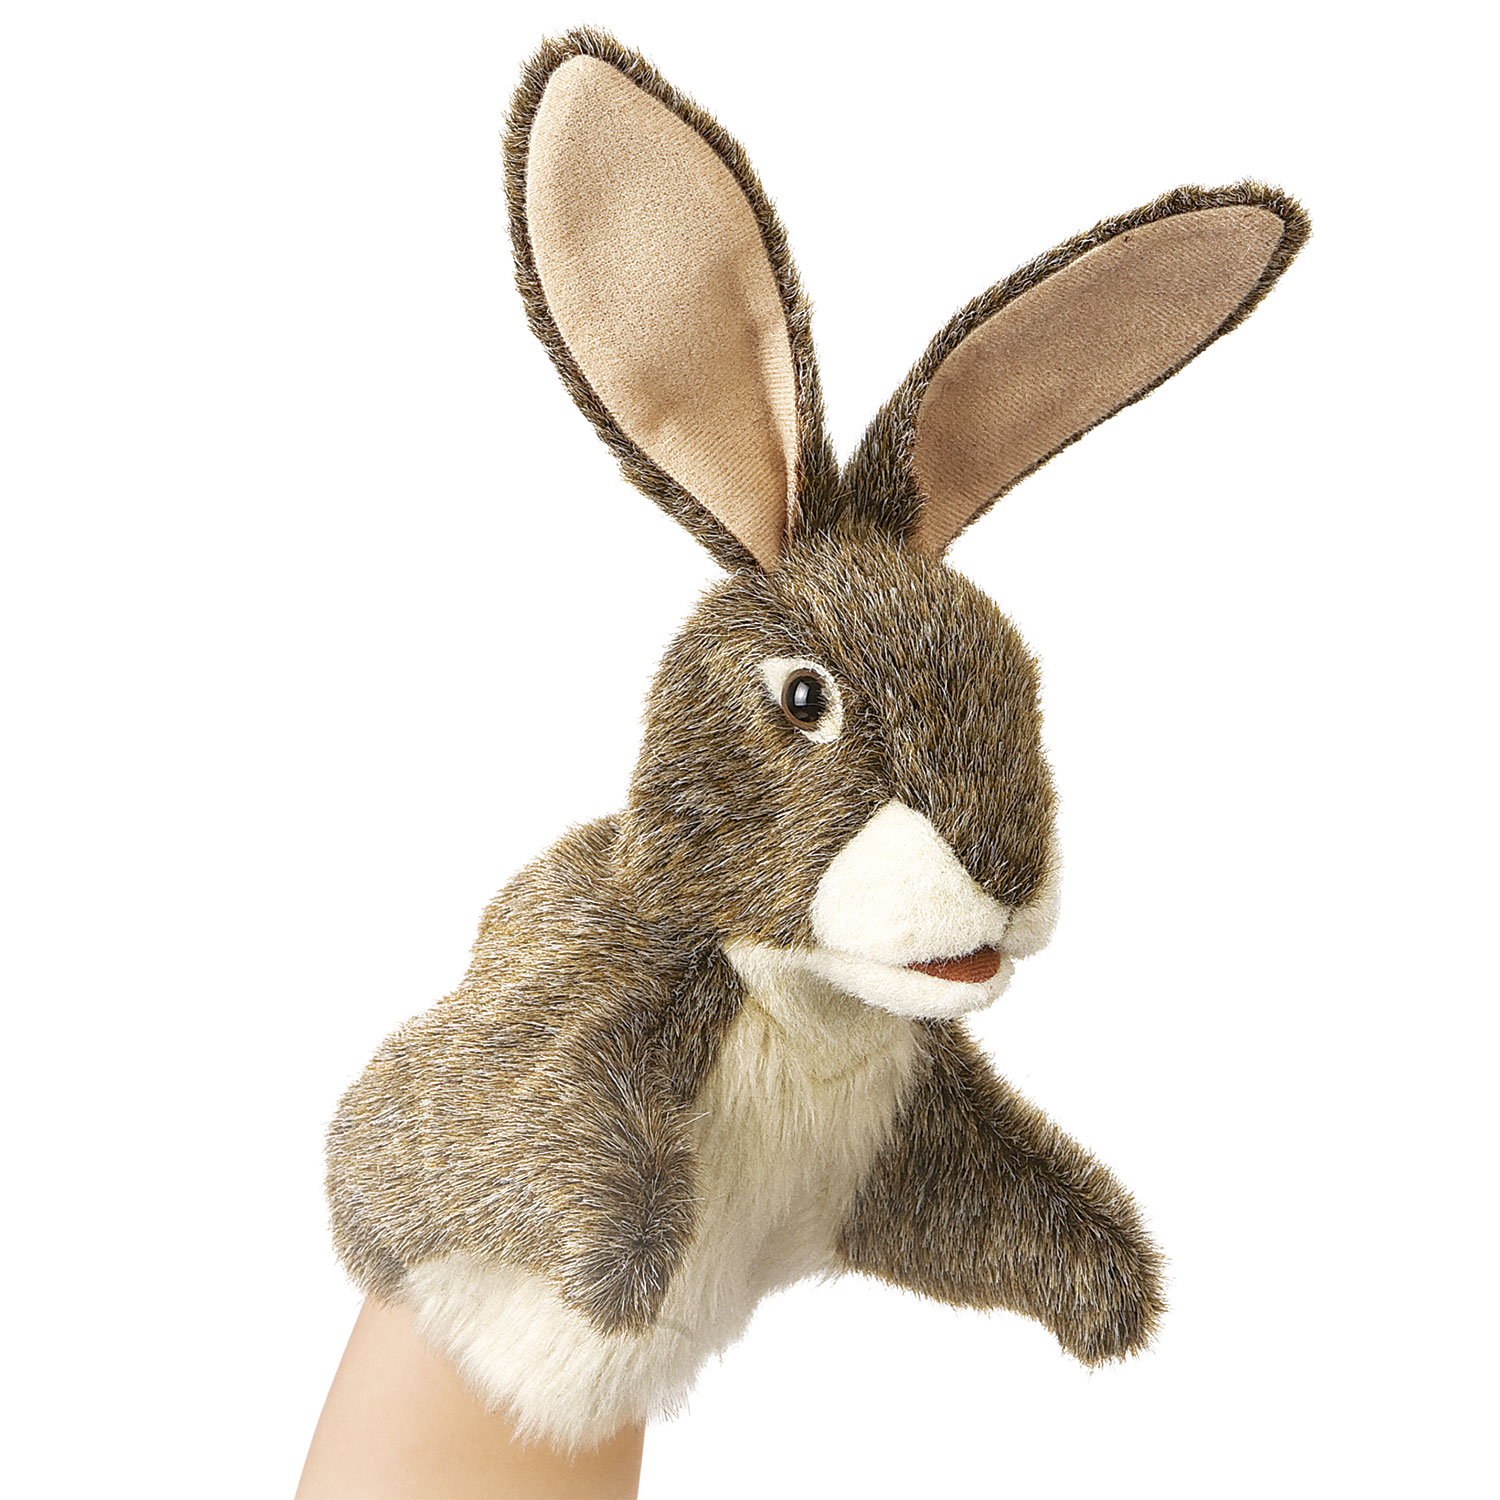 Kleiner Hase / Little Hare